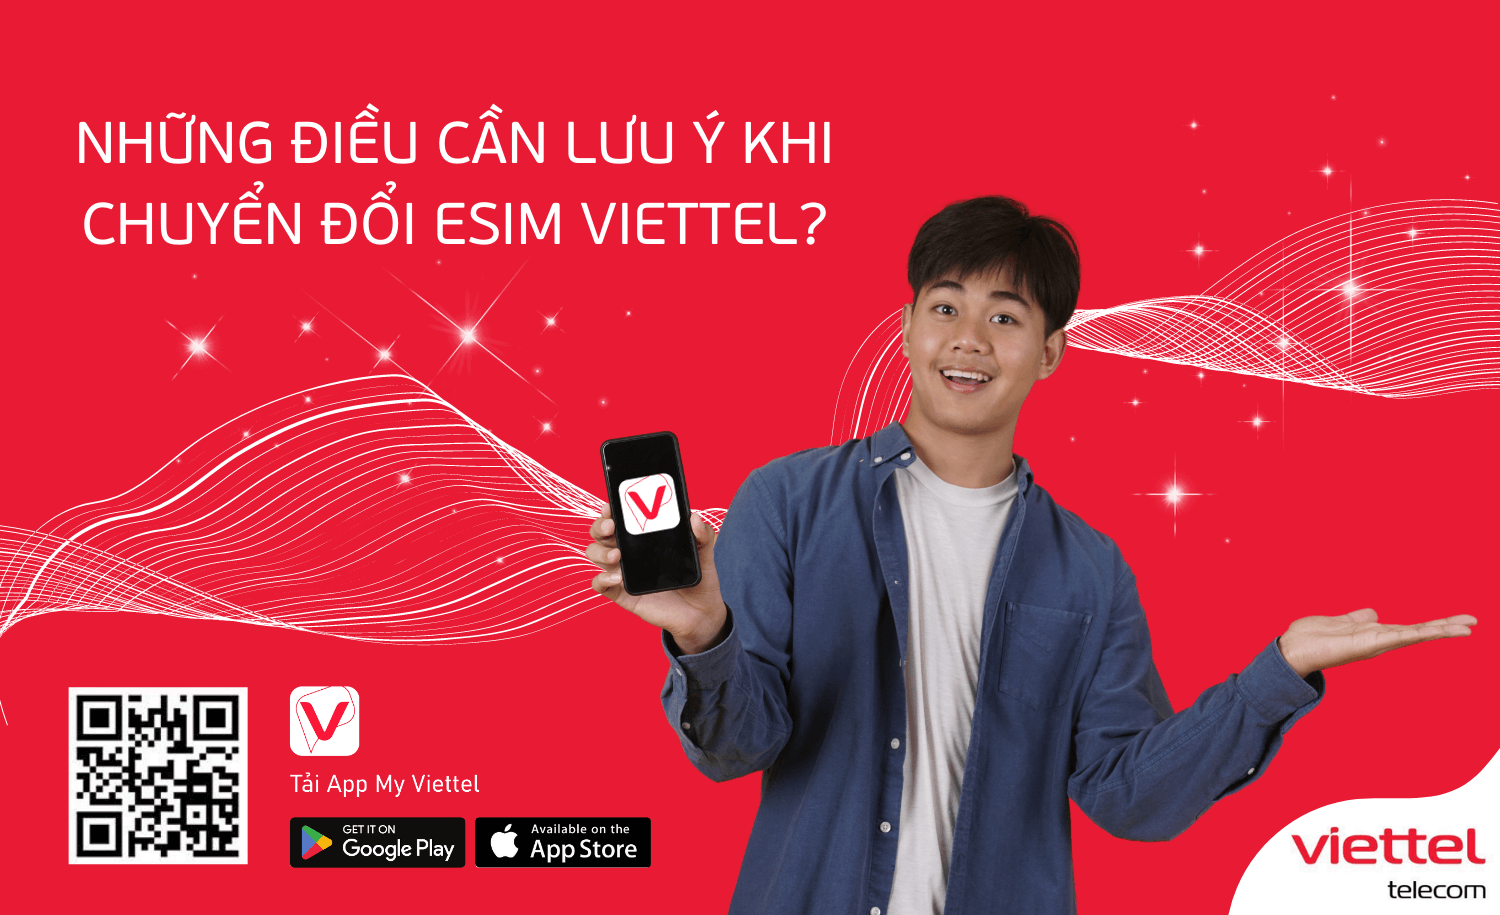 eSIM Viettel: Gọi và nhắn tin đến bạn bè và gia đình của bạn sẽ trở nên dễ dàng hơn bao giờ hết với eSIM Viettel. Không cần thêm thẻ SIM hoặc thao tác phức tạp để kết nối mạng, chỉ cần một chiếc điện thoại thông minh và eSIM Viettel là đủ. Hãy xem hình ảnh về eSIM Viettel để trải nghiệm ngay hôm nay.